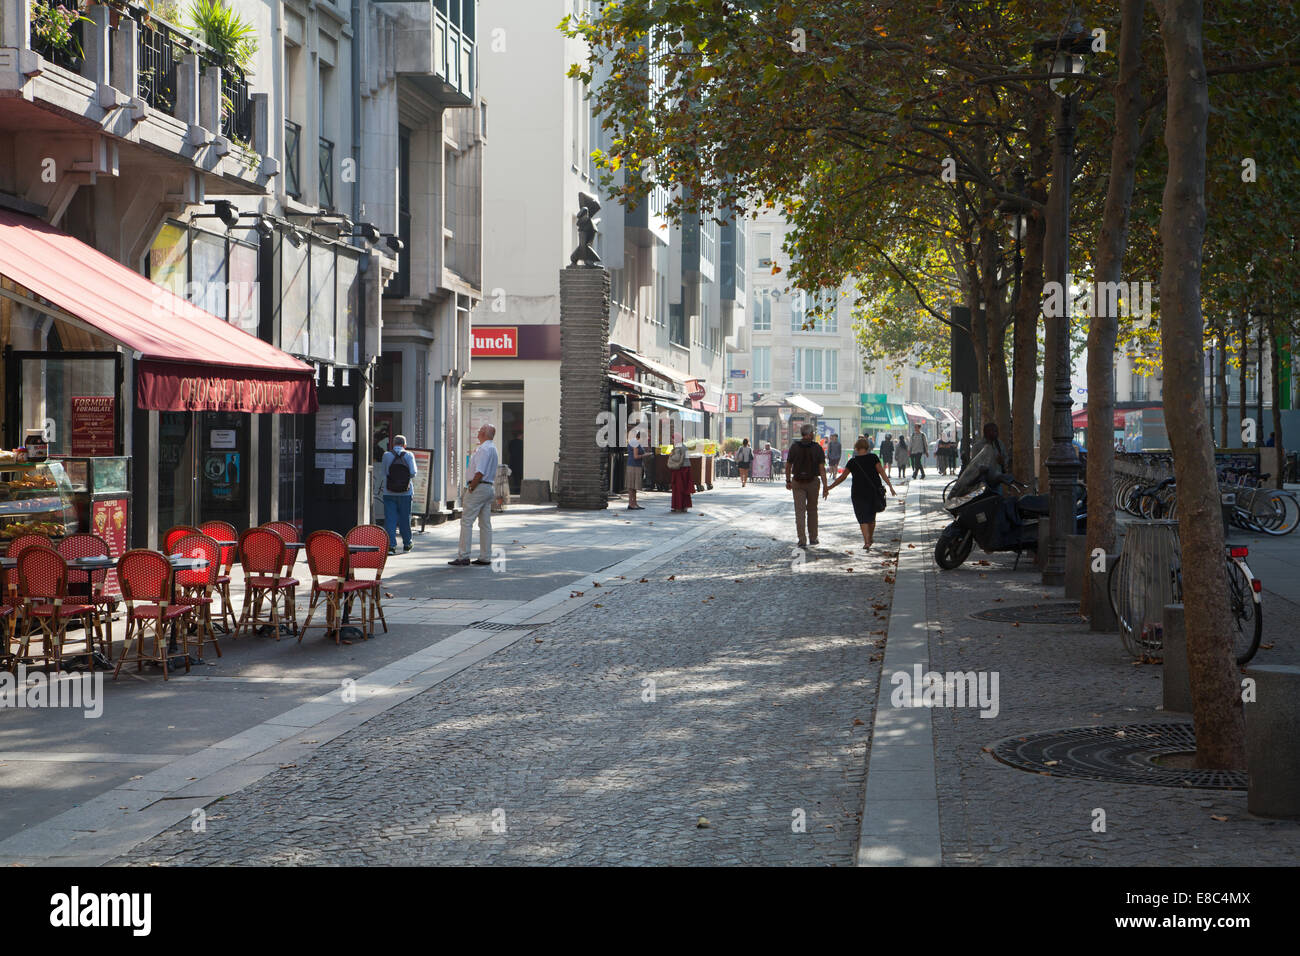 Rue Aubry le Boucher, Paris, France Stock Photo - Alamy